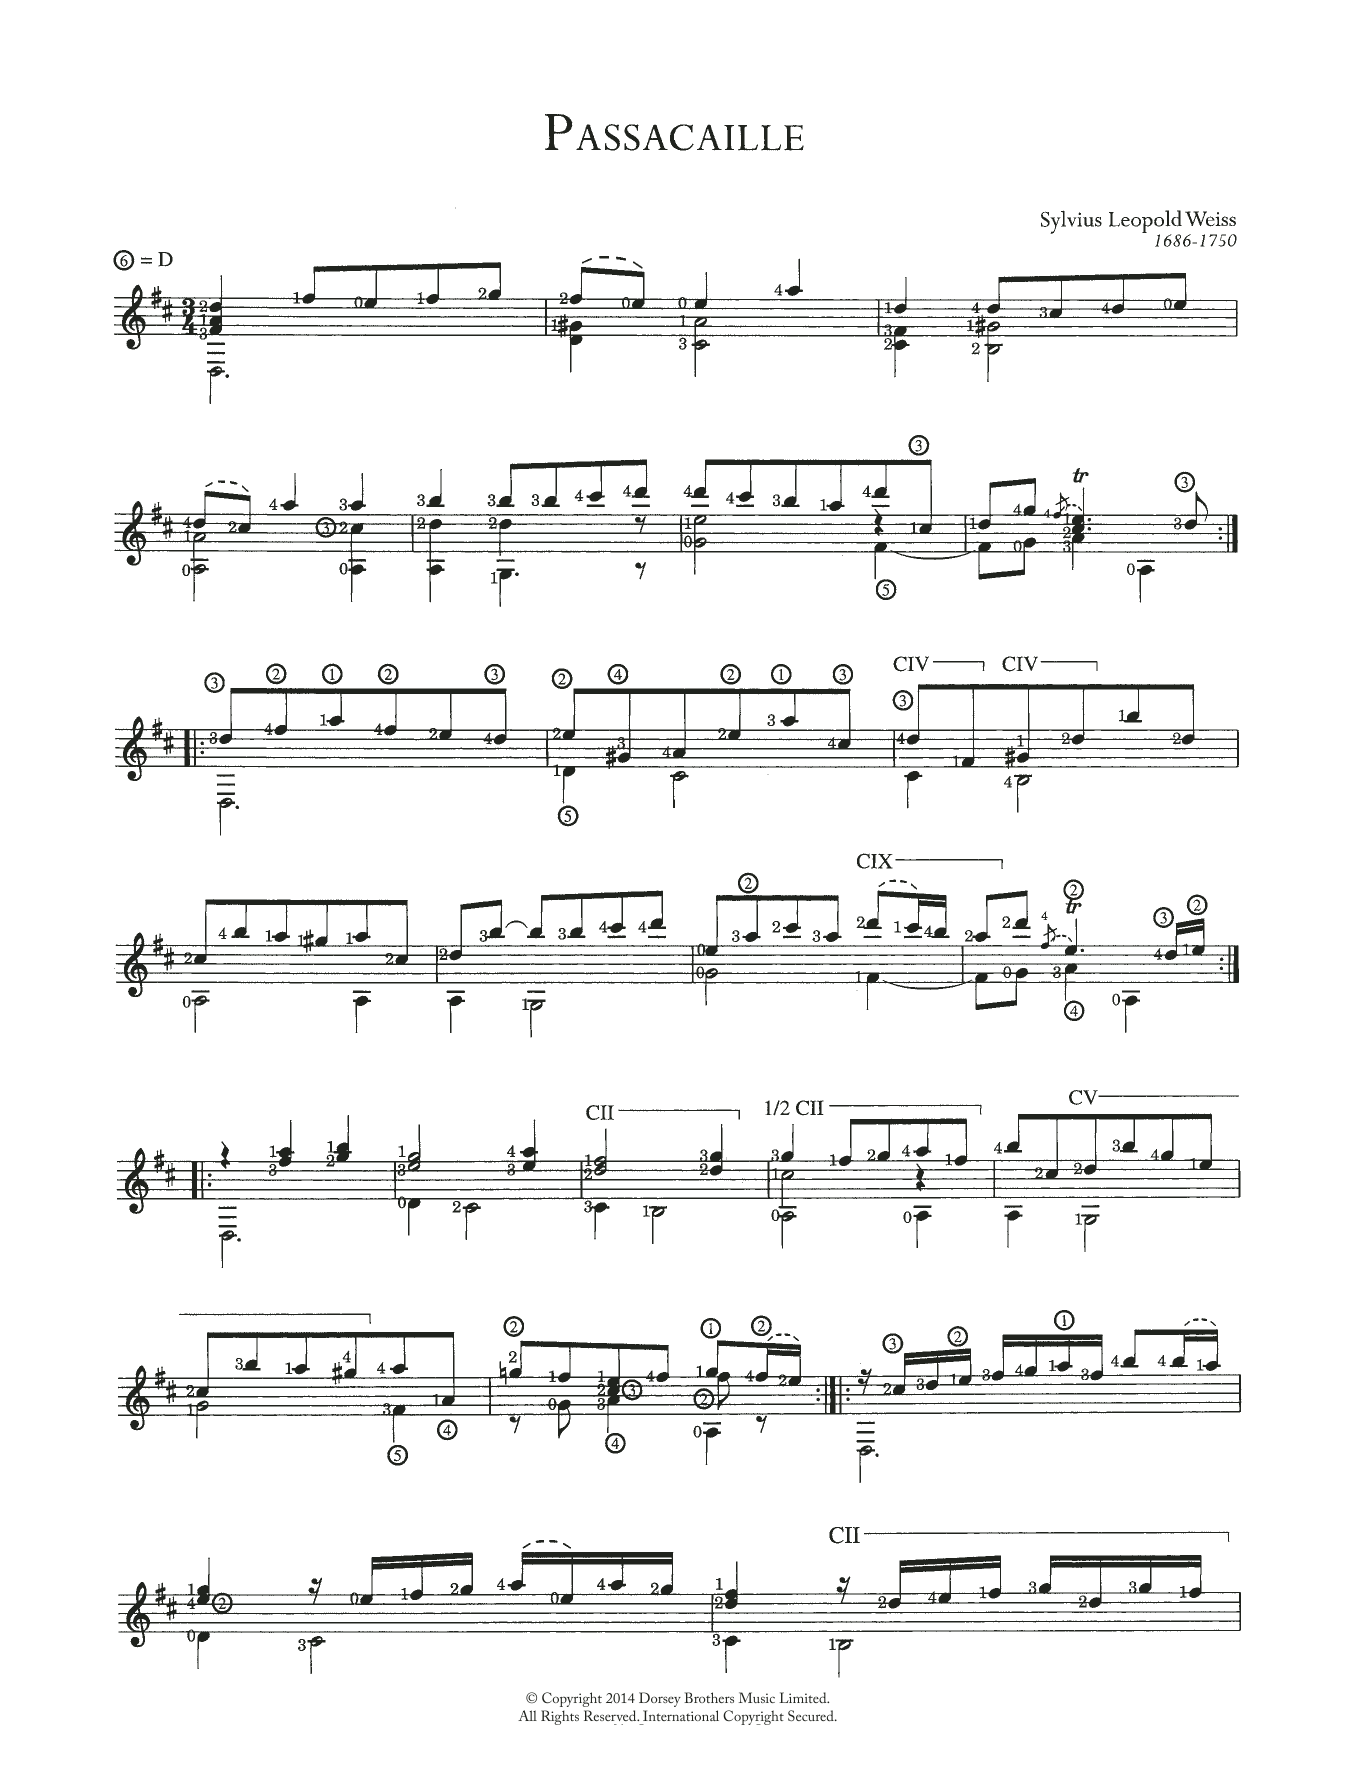 Passacaille (Solo Guitar) von Sylvius Leopold Weiss